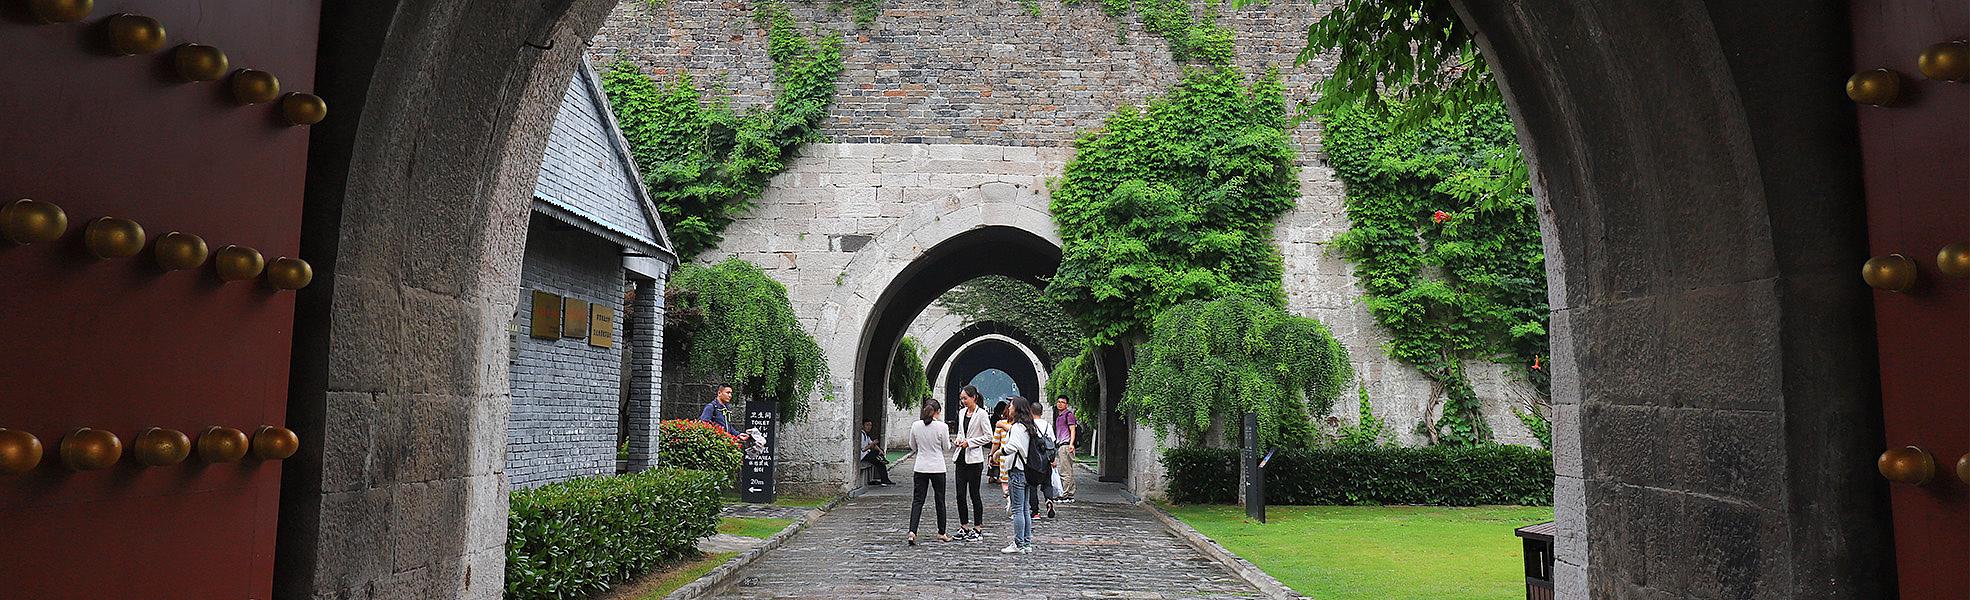 Zhonghua Gate